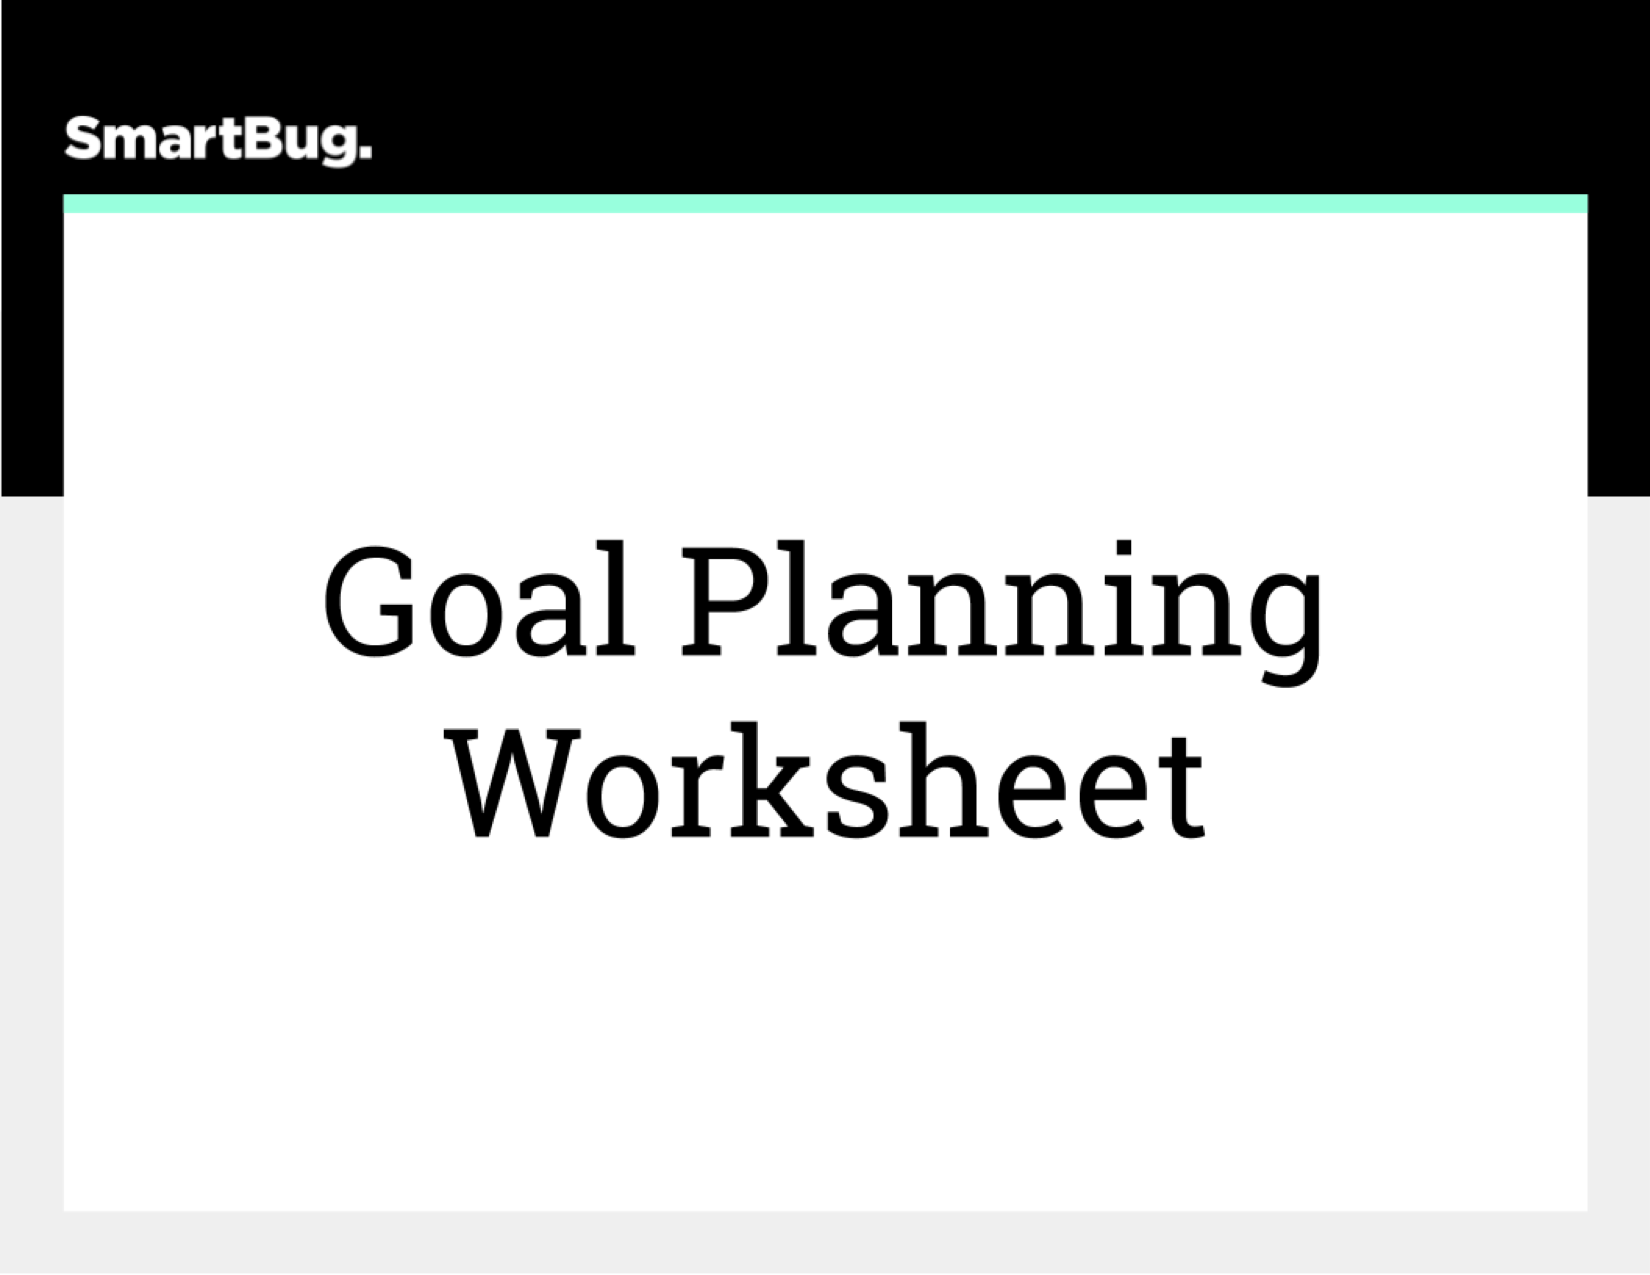 Goal Planning Worksheet (COVER)